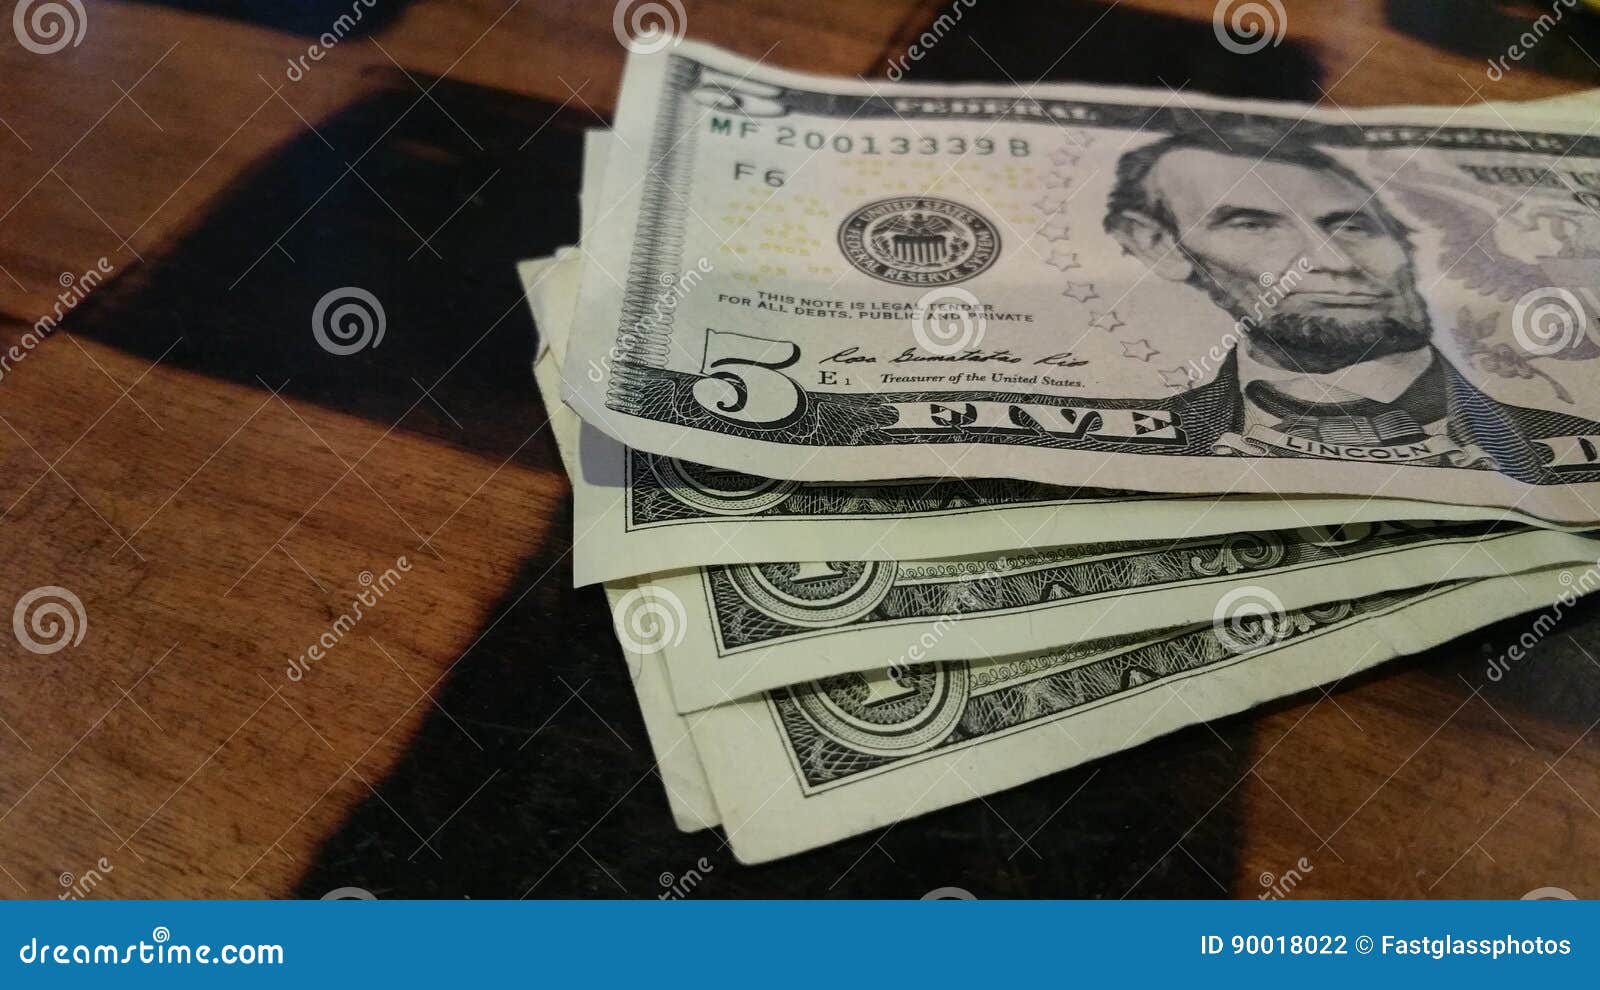 money for tip